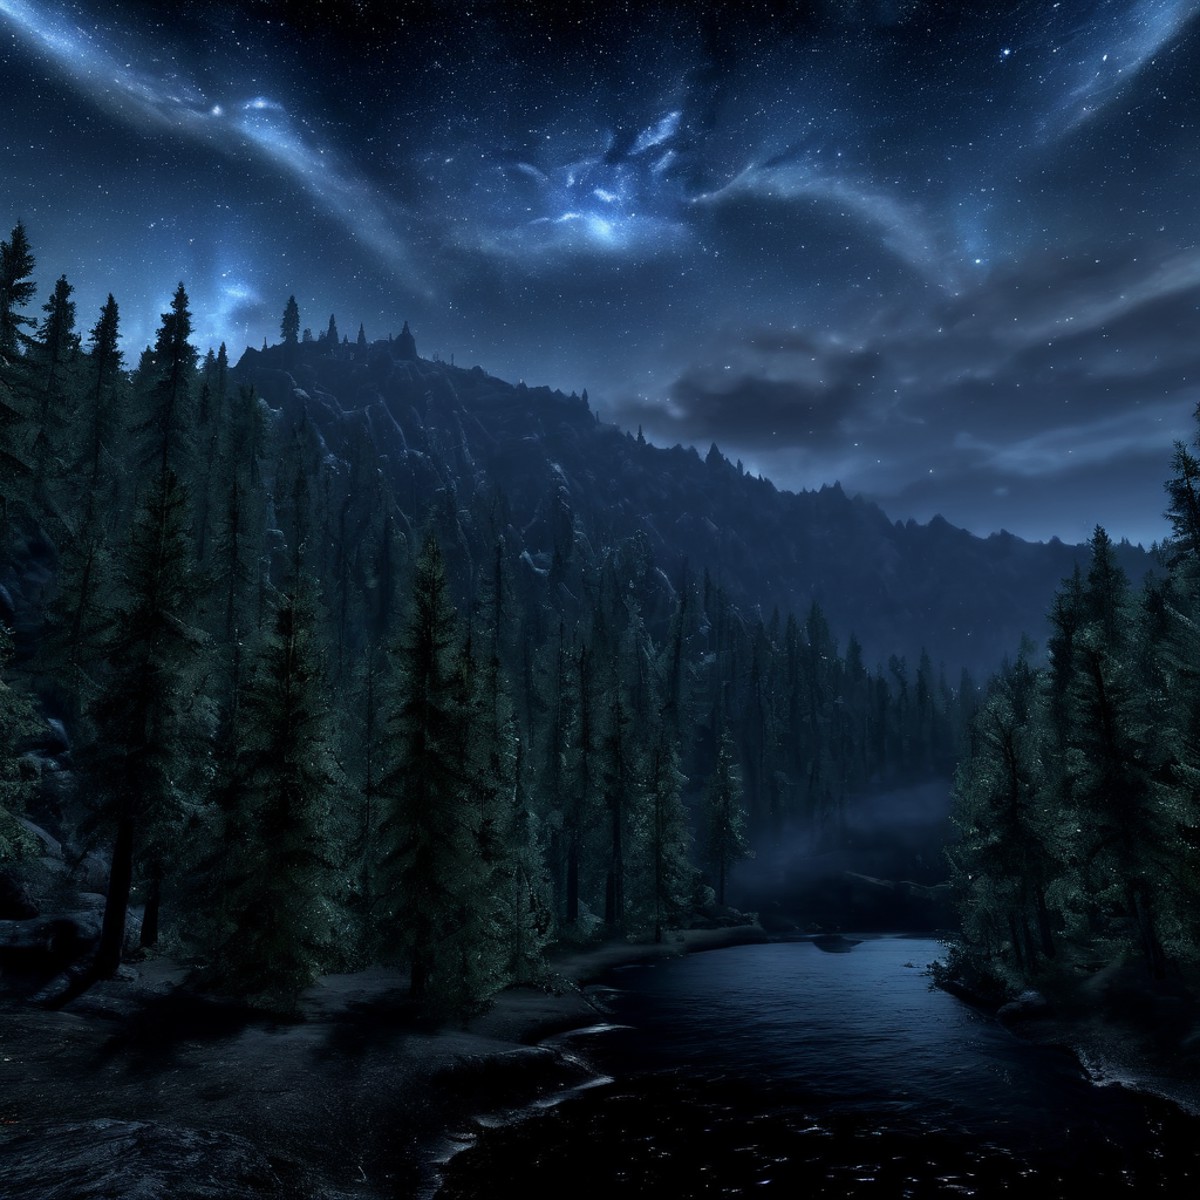 Masterpiece,absurd resolution,8k,high resolution,
 <lora:SkyrimLandscapes:0.8>,
skyrimlandscapes, sky, night, scenery, sta...